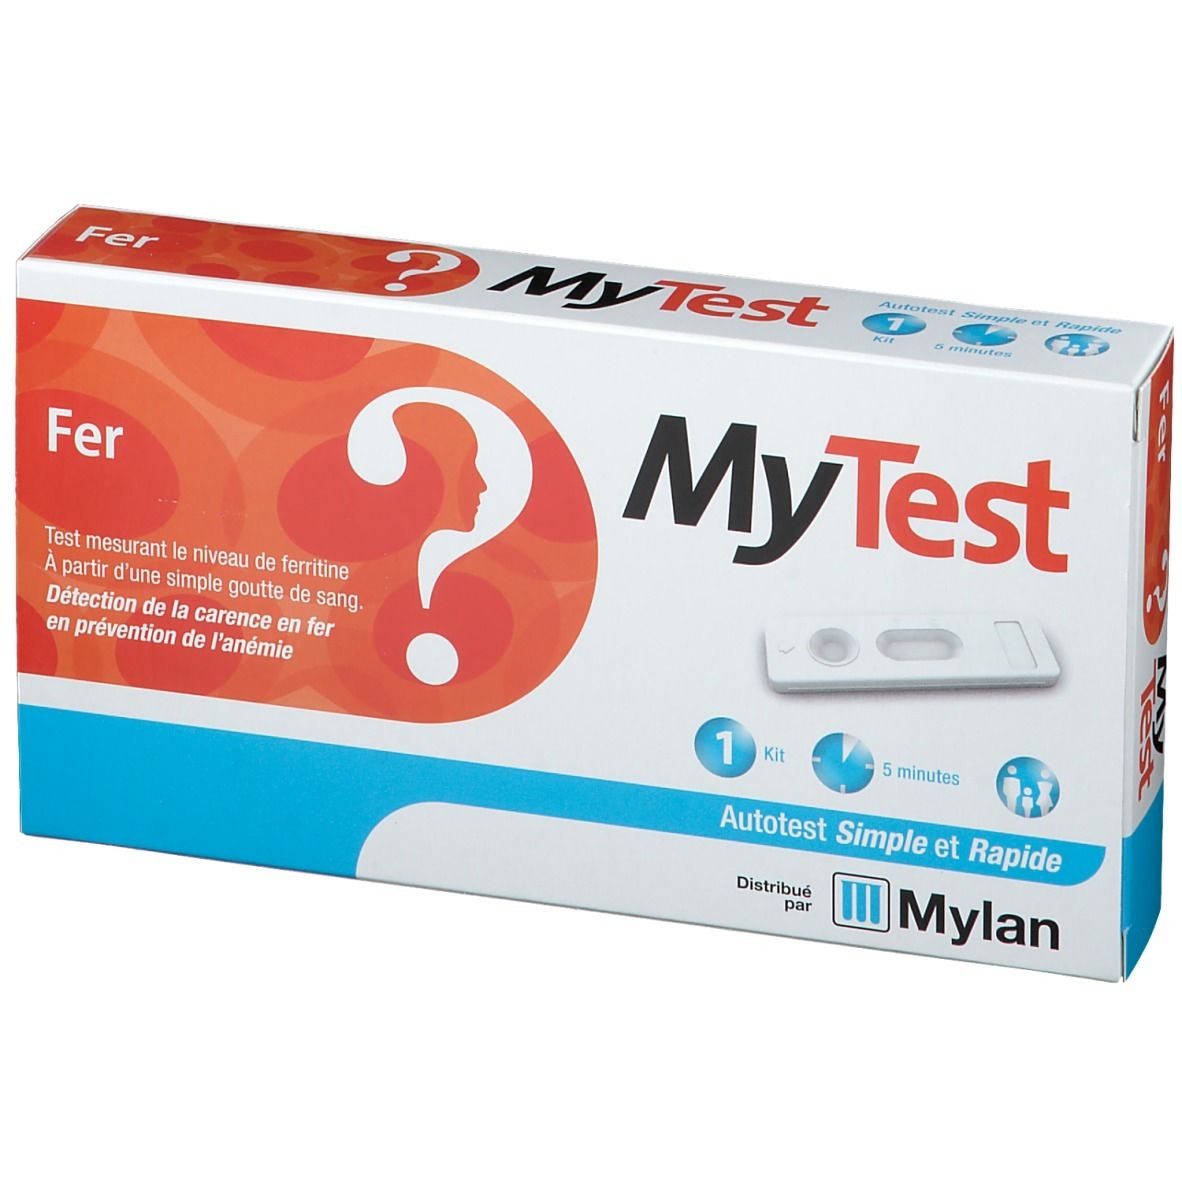 MyTest Fer Test